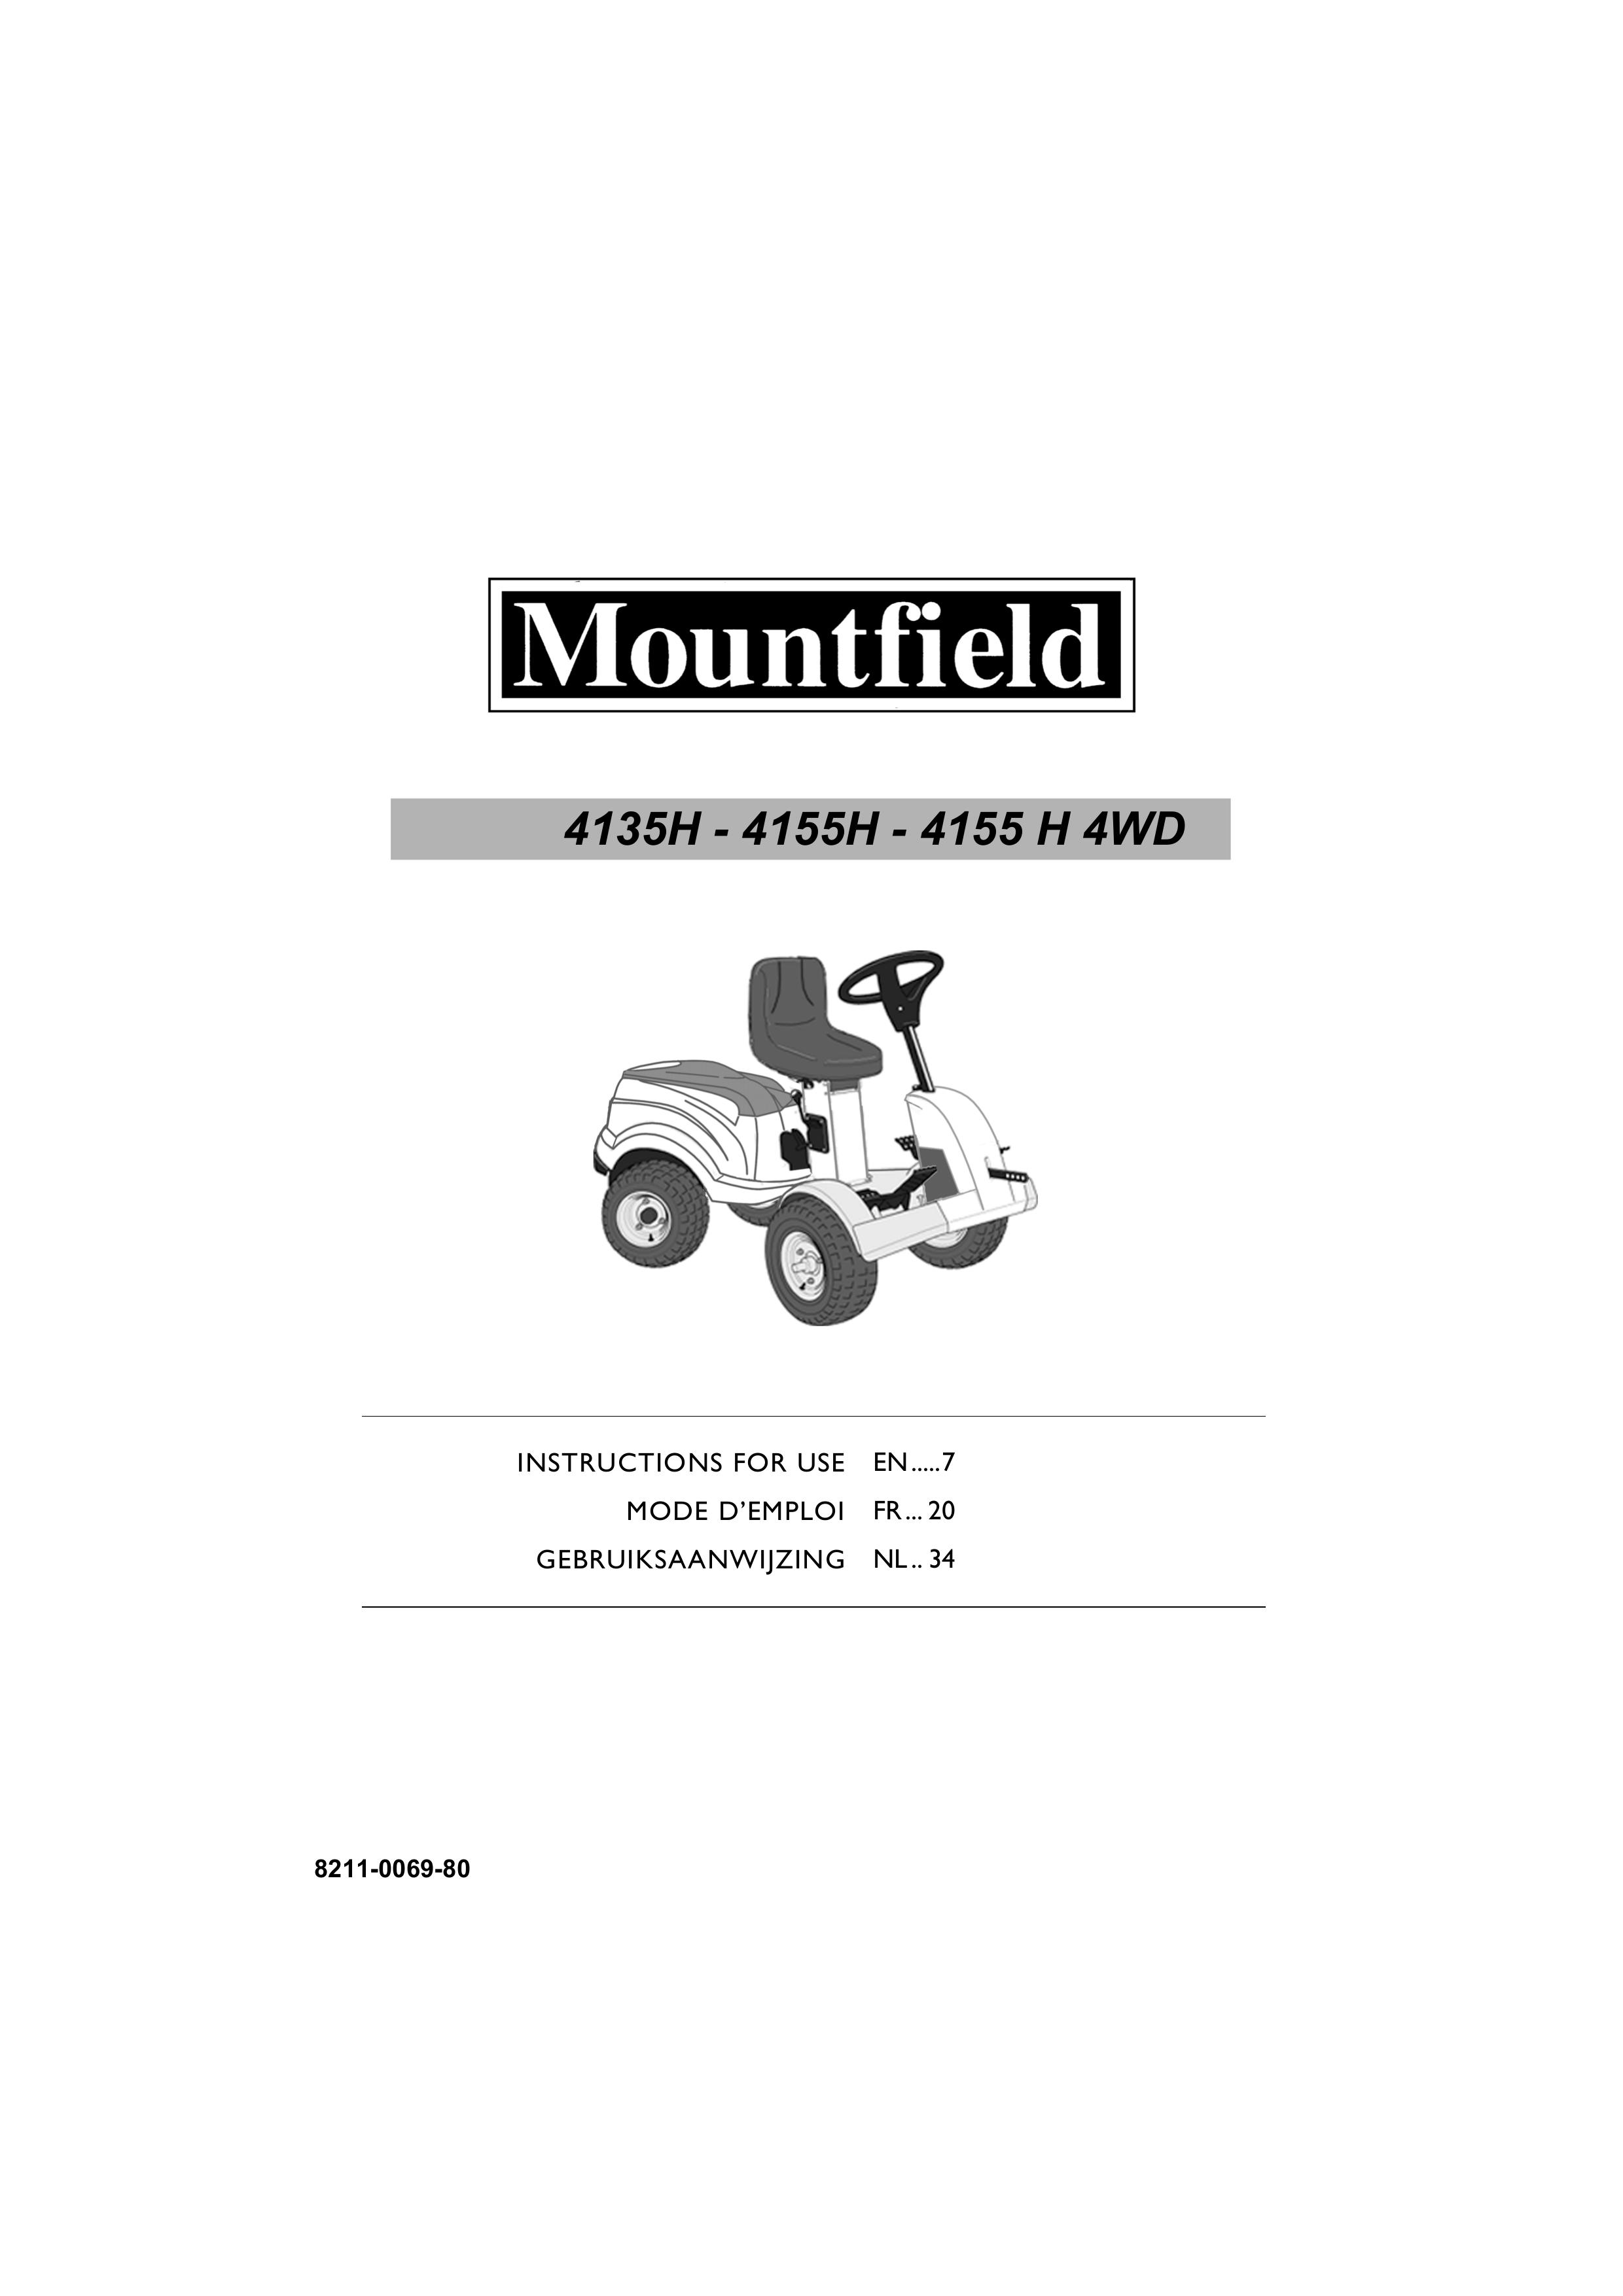 Mountfield 4155H Lawn Mower User Manual